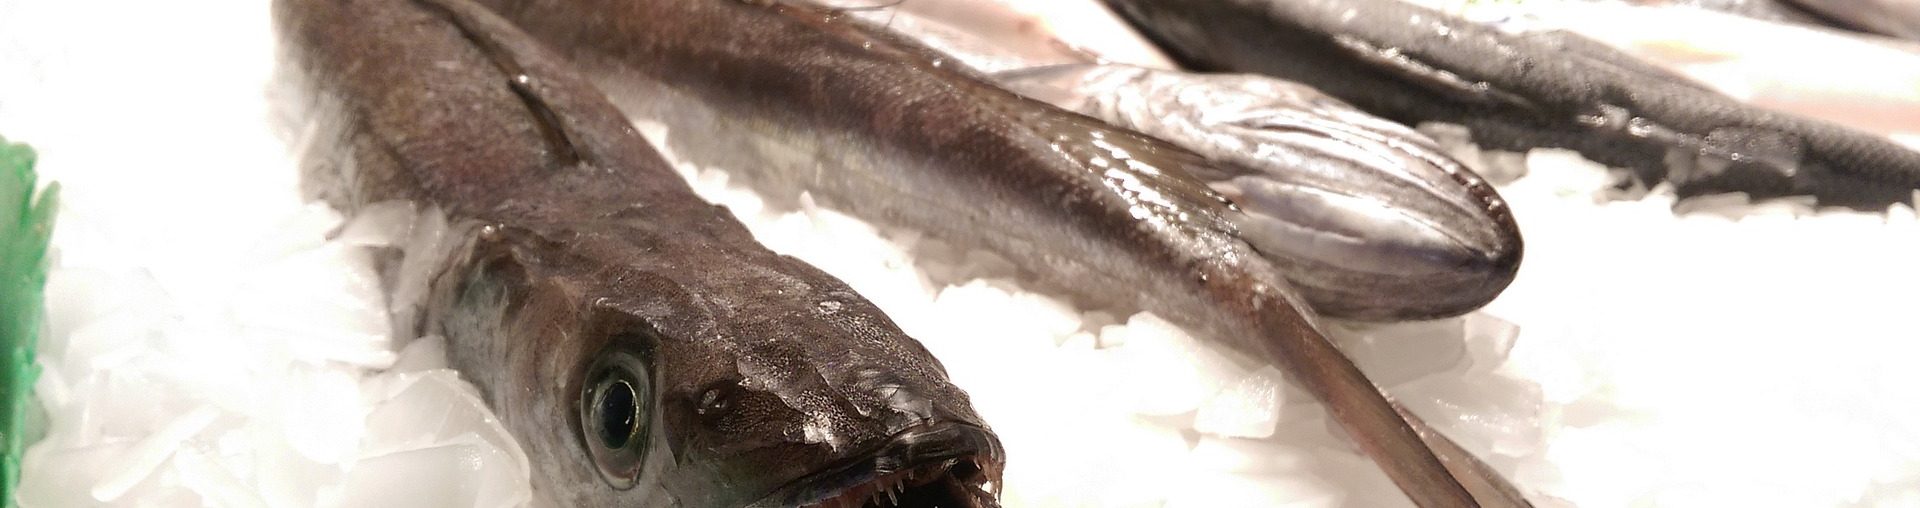 8 советов, которые помогут выбрать свежую рыбу на рынке или в магазине